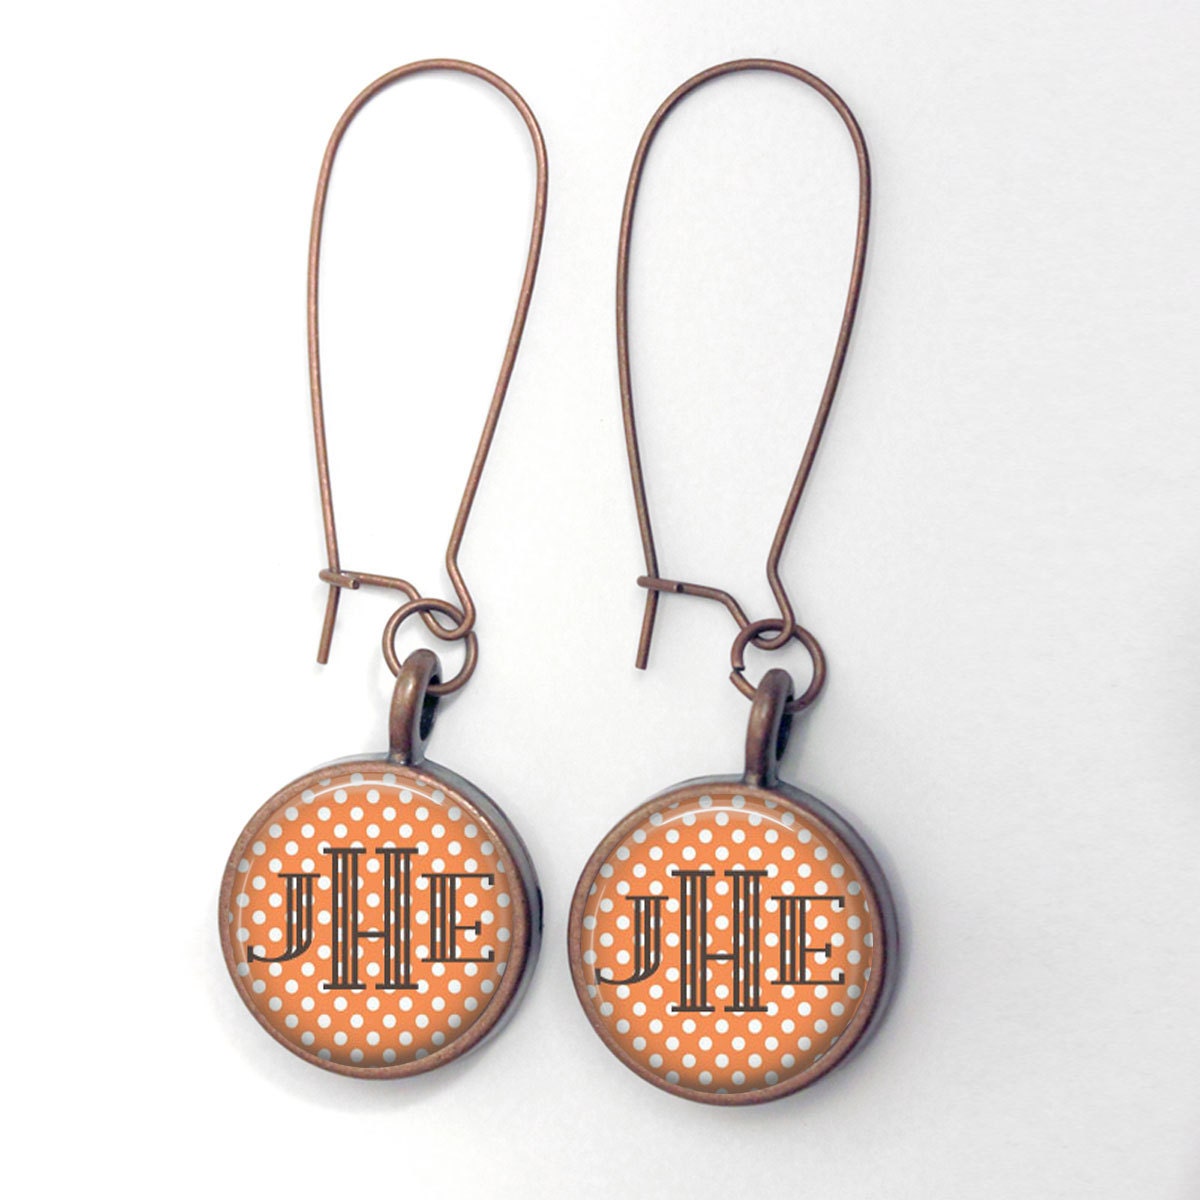 Bezel Earrings - monogram earrings personalized coral polka dot bronze dangle earrings metal wire earrings birthday mothers day gift